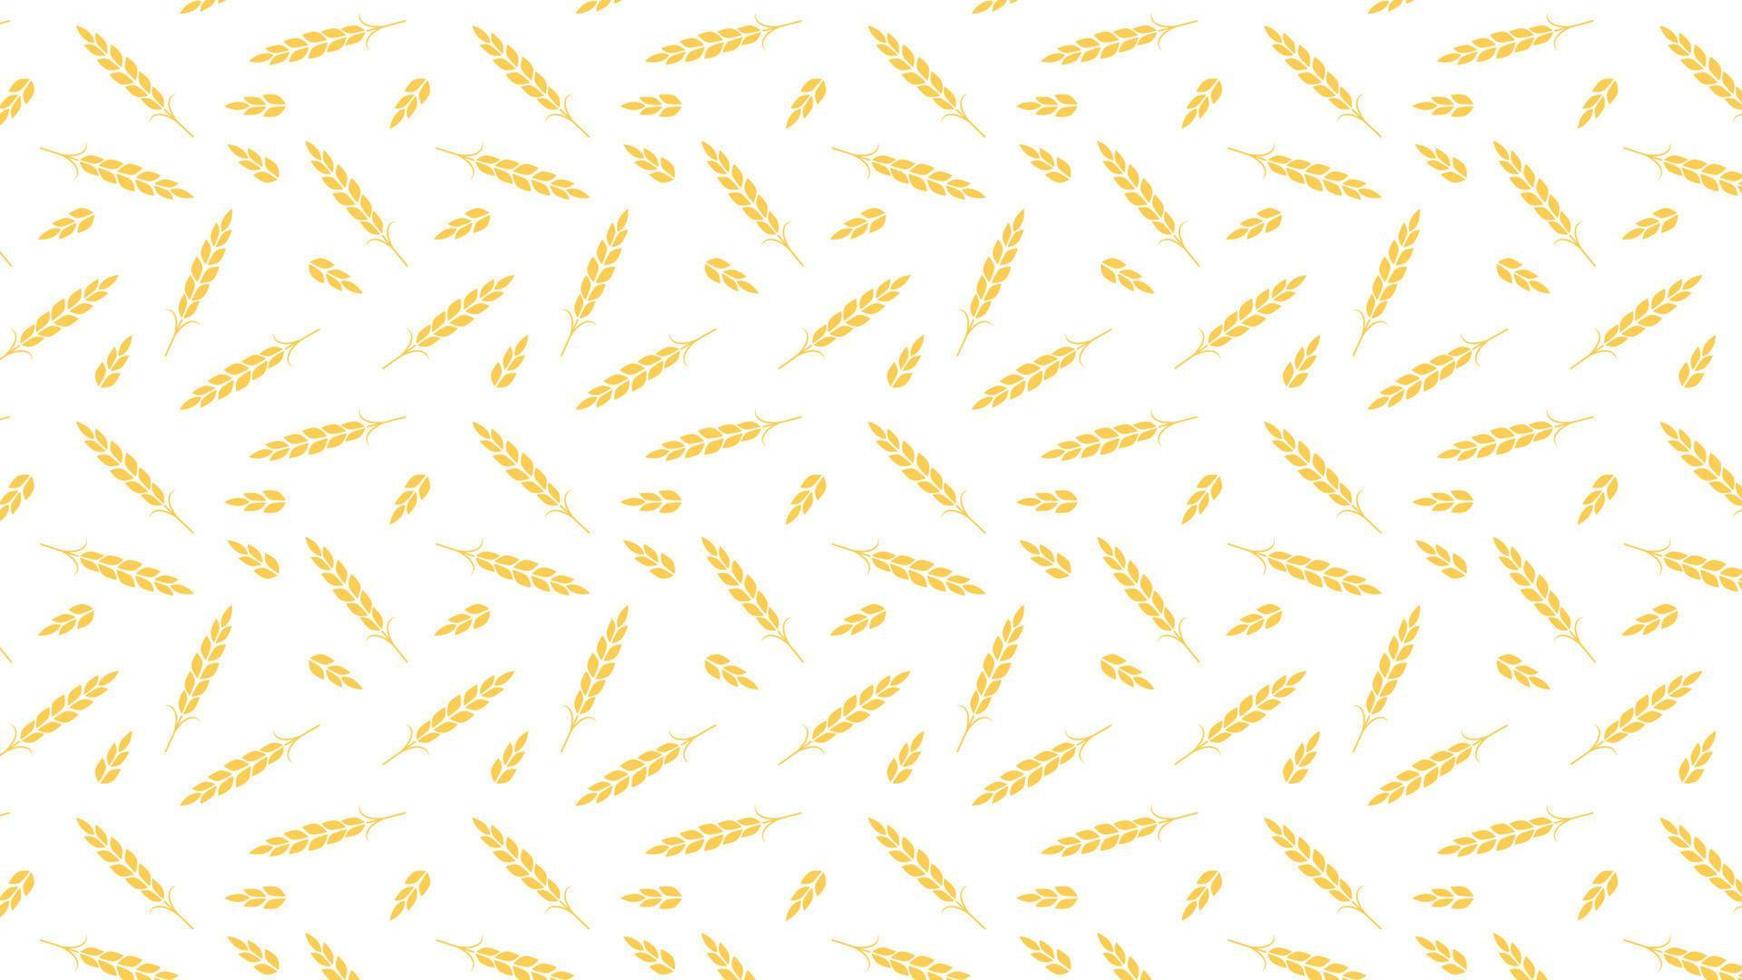 papel de parede padrão de trigo. símbolo de aveia. espaço livre para texto. sinal de arroz. papel de parede padrão de arroz. vetor